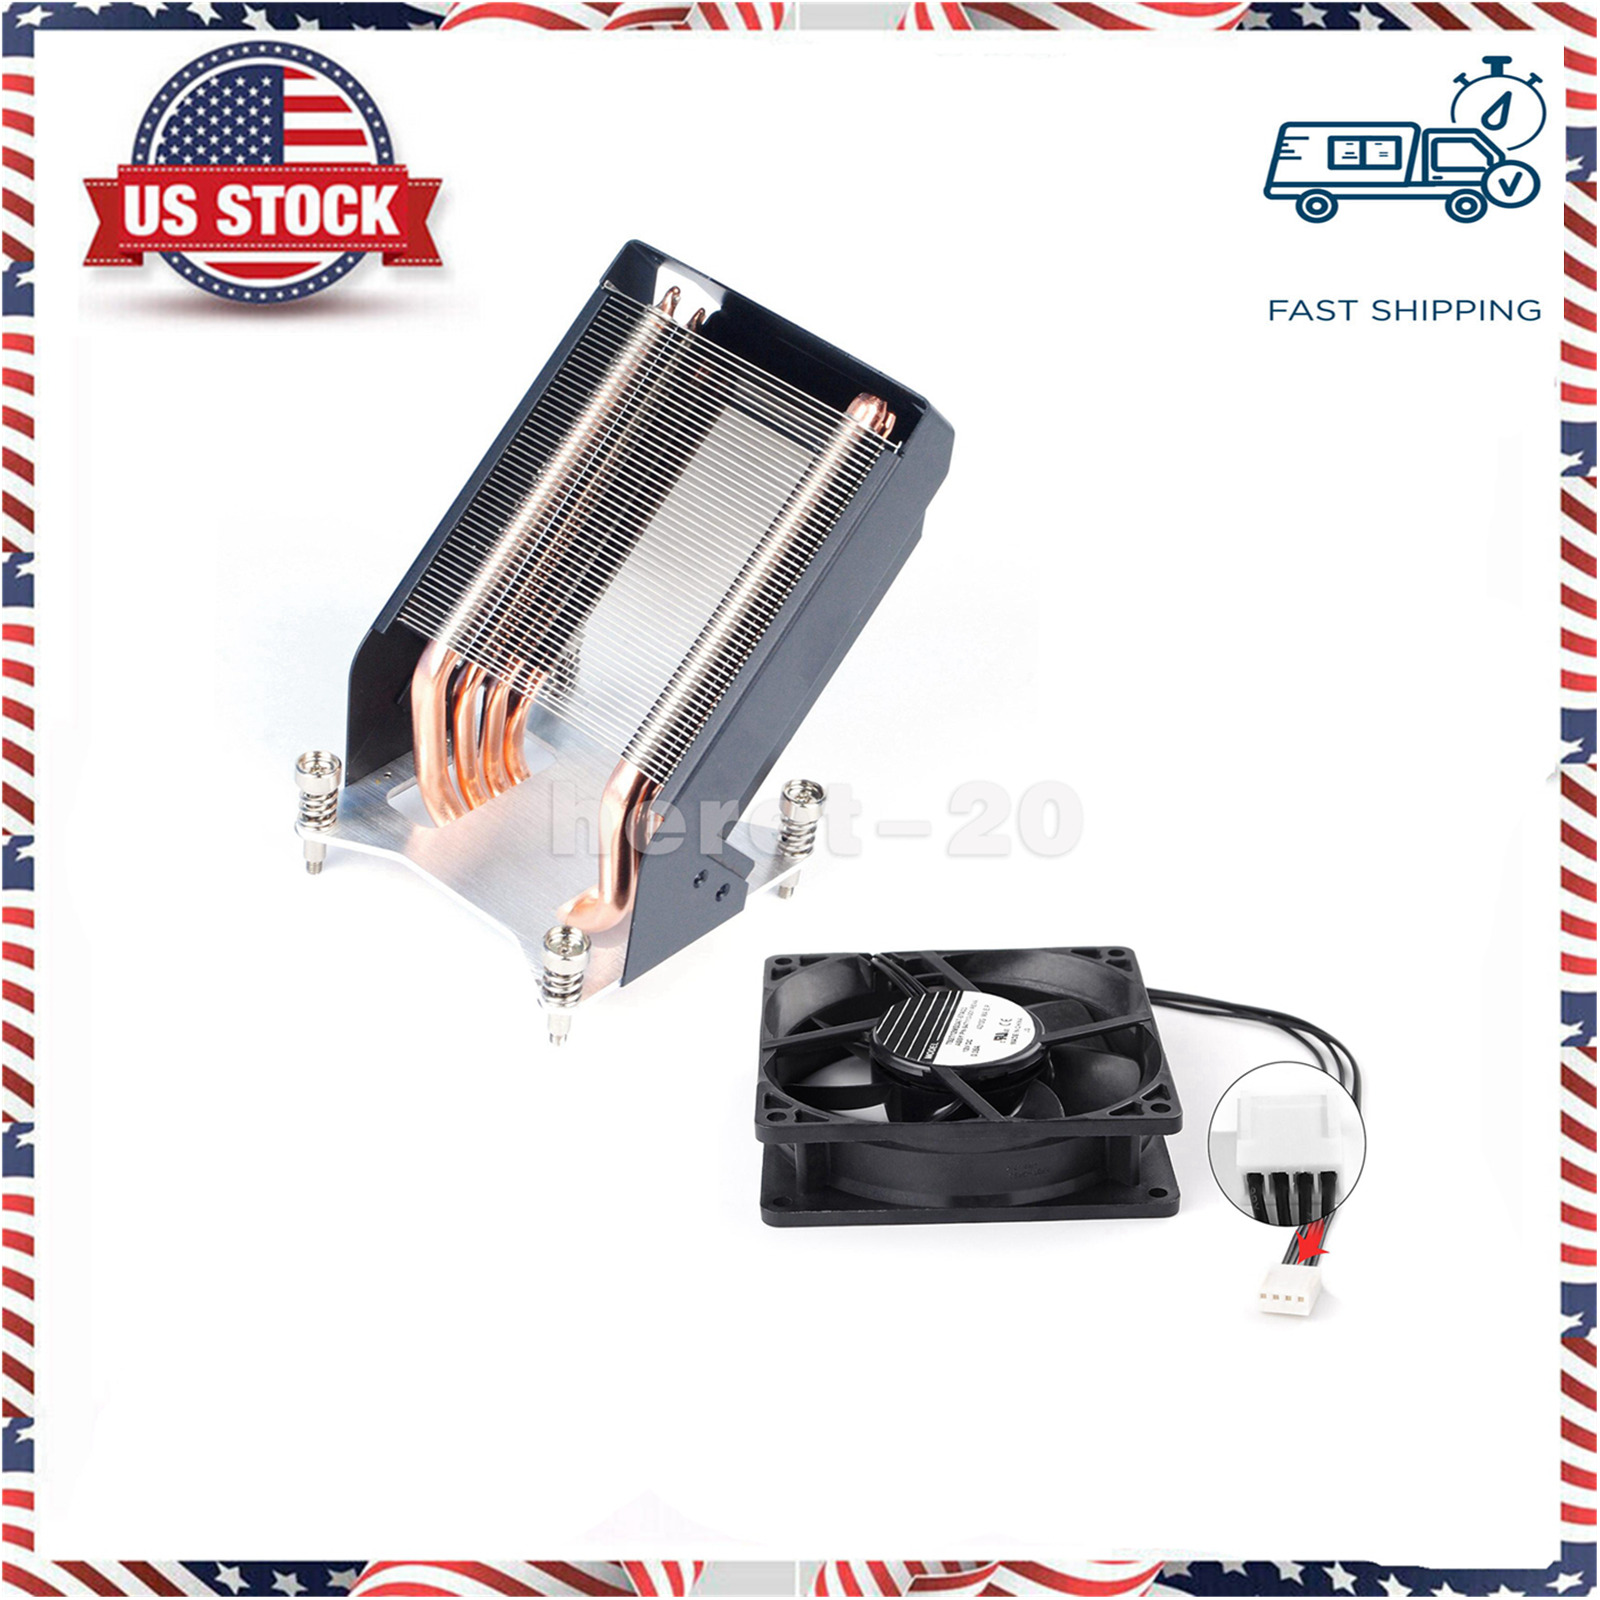 New Heatsink Kit for HP Z840 Z820 749598-001 782506-001 w/ Fan 647113-001 US